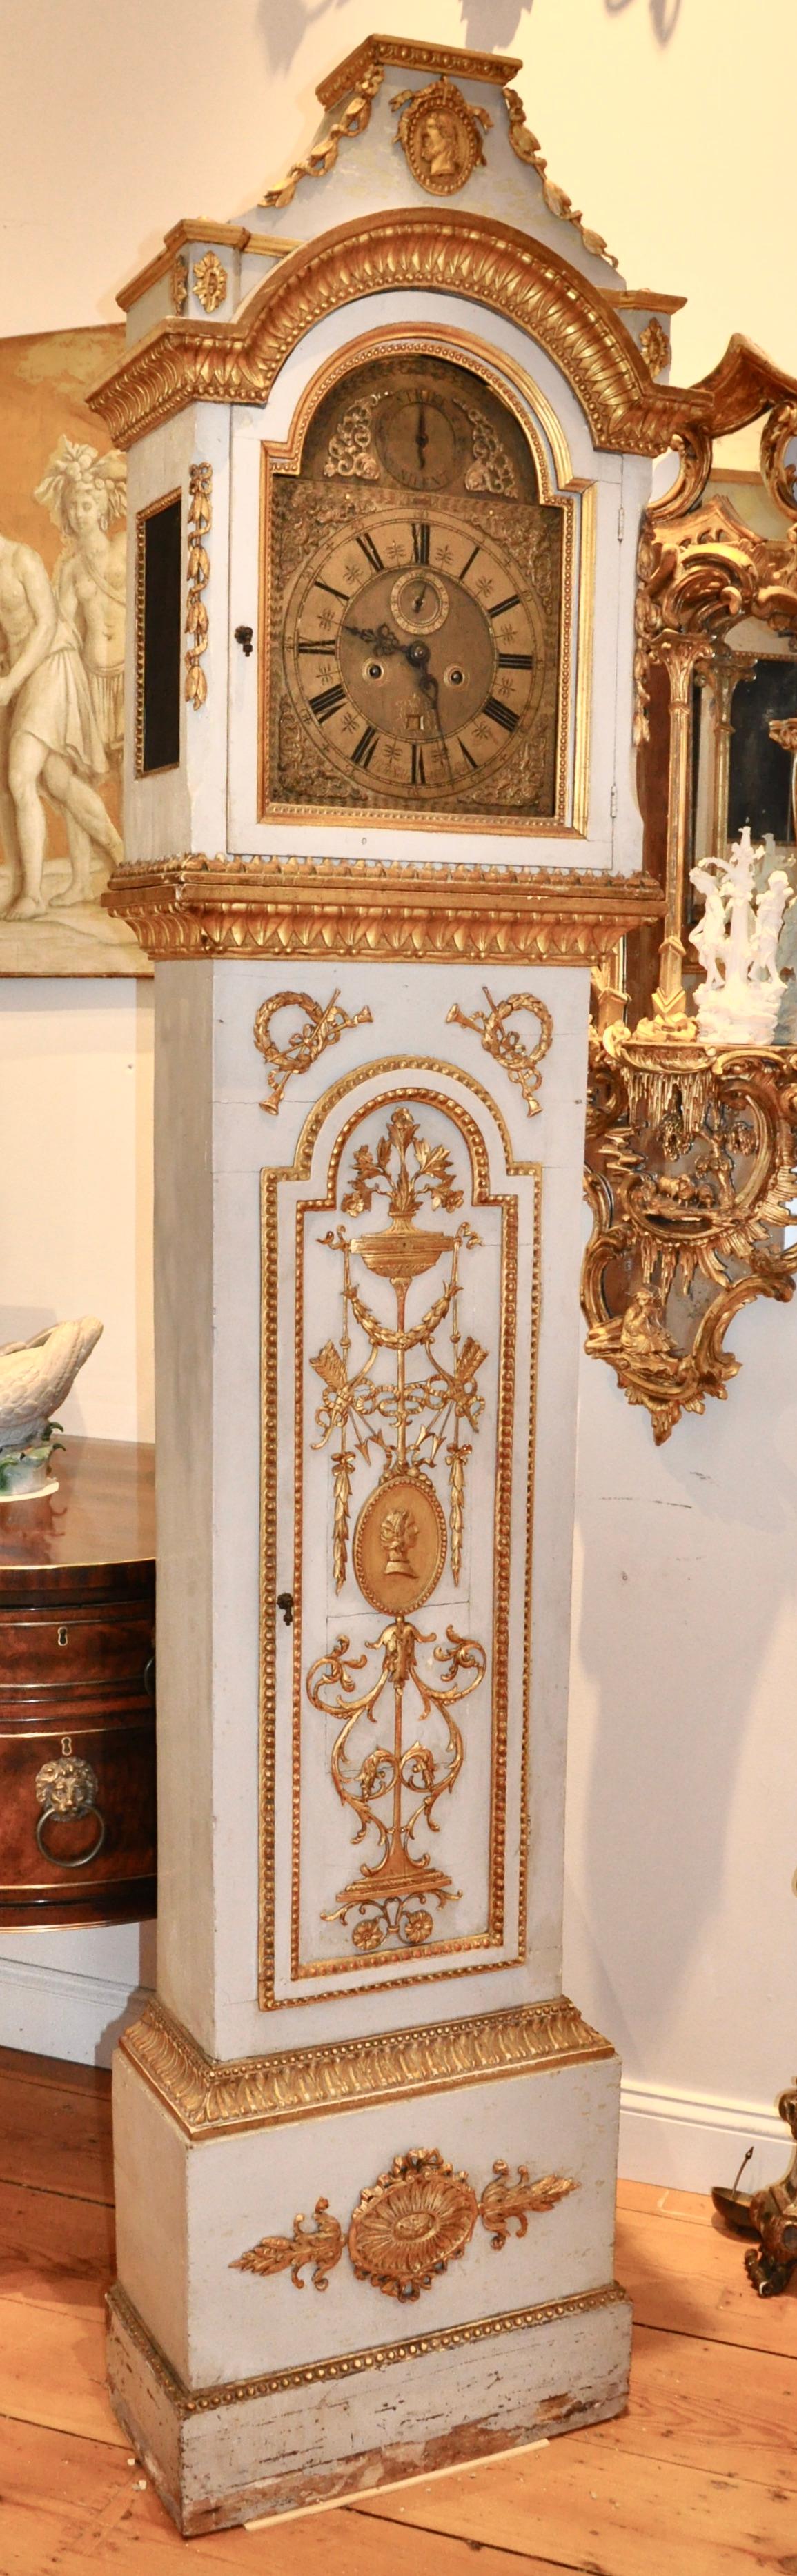 Horloge néoclassique danoise en bois sculpté et doré du début du 19e siècle. Dorure d'origine sur tous les ornements néoclassiques sculptés à la main. Provenance du palais, plus que probable. Profil d'un homme et d'une femme, vraisemblablement issus